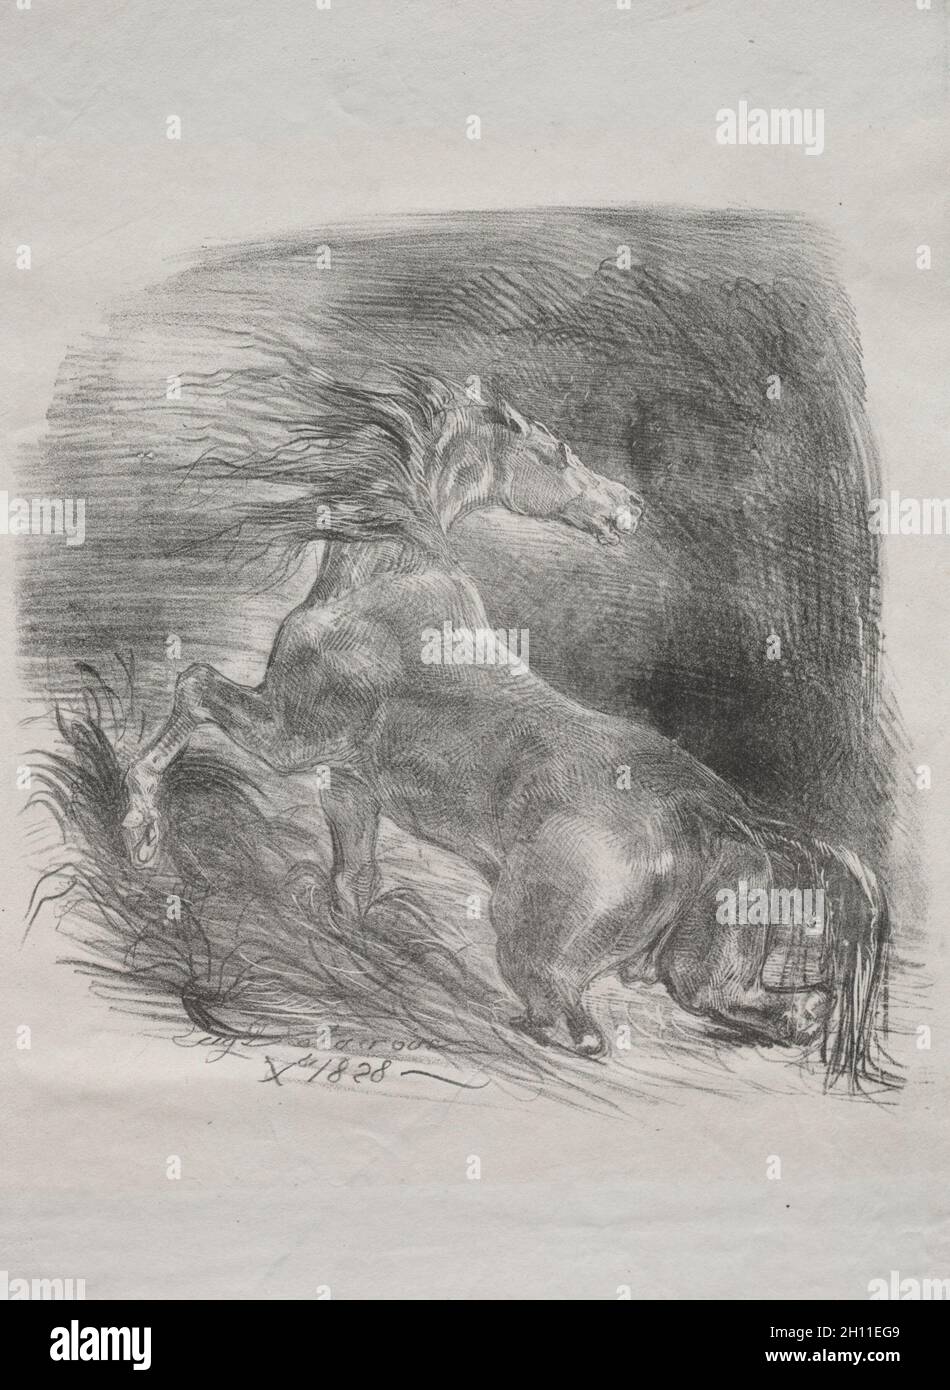 Le cheval sauvage, ou le cheval effrayé quittant l'eau, 1828.Eugène Delacroix (français, 1798-1863).Lithographie; feuille: 34.3 x 27.1 cm (13 1/2 x 10 11/16 po.); image: 23.5 x 24 cm (9 1/4 x 9 7/16 po.). Banque D'Images